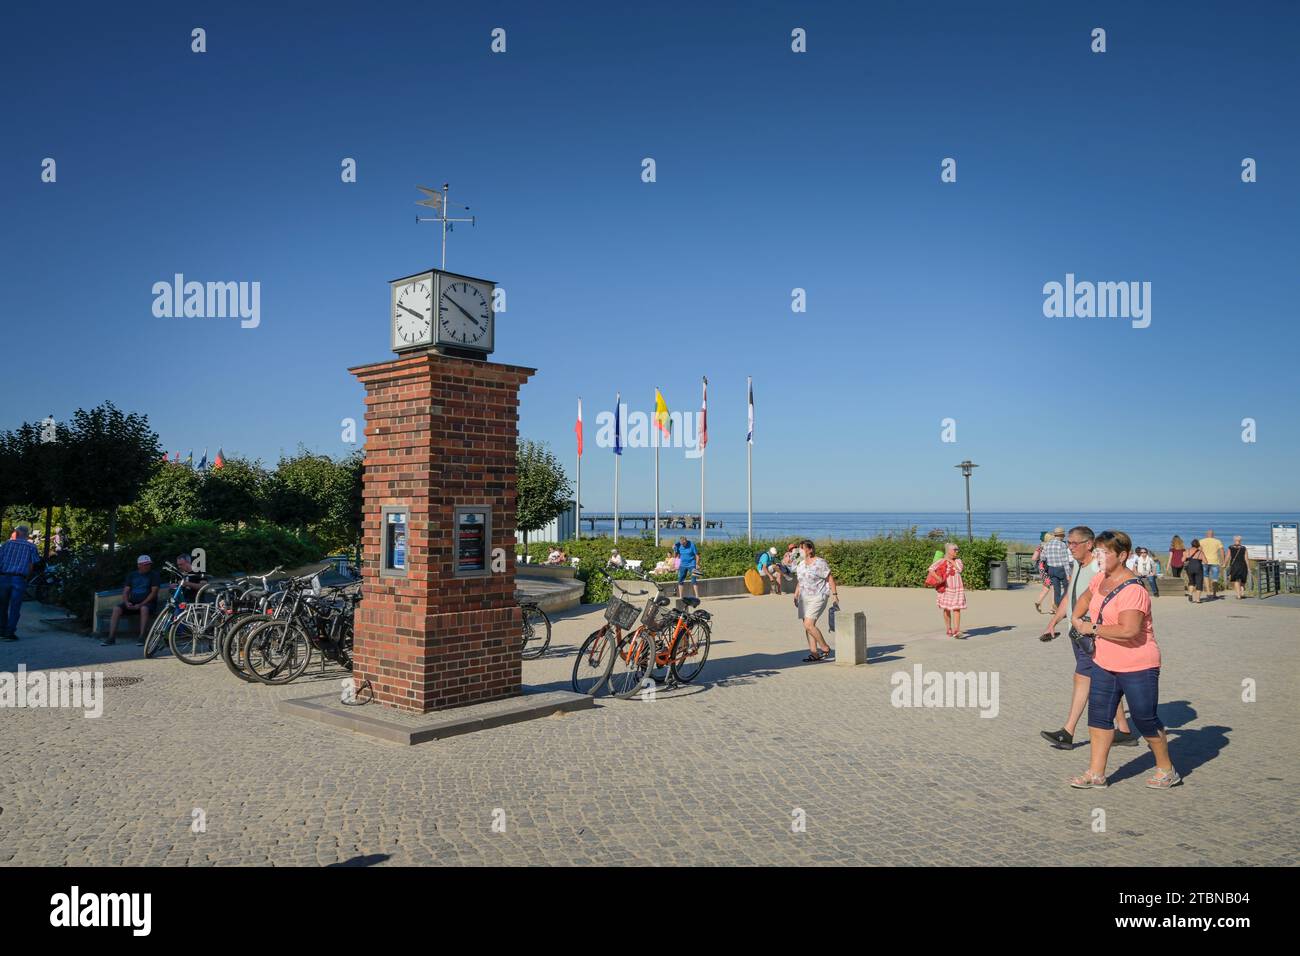 Uhr, Strandpromenade, Bansin, Usedom, Mecklenburg-Vorpommern, Deutschland Stock Photo